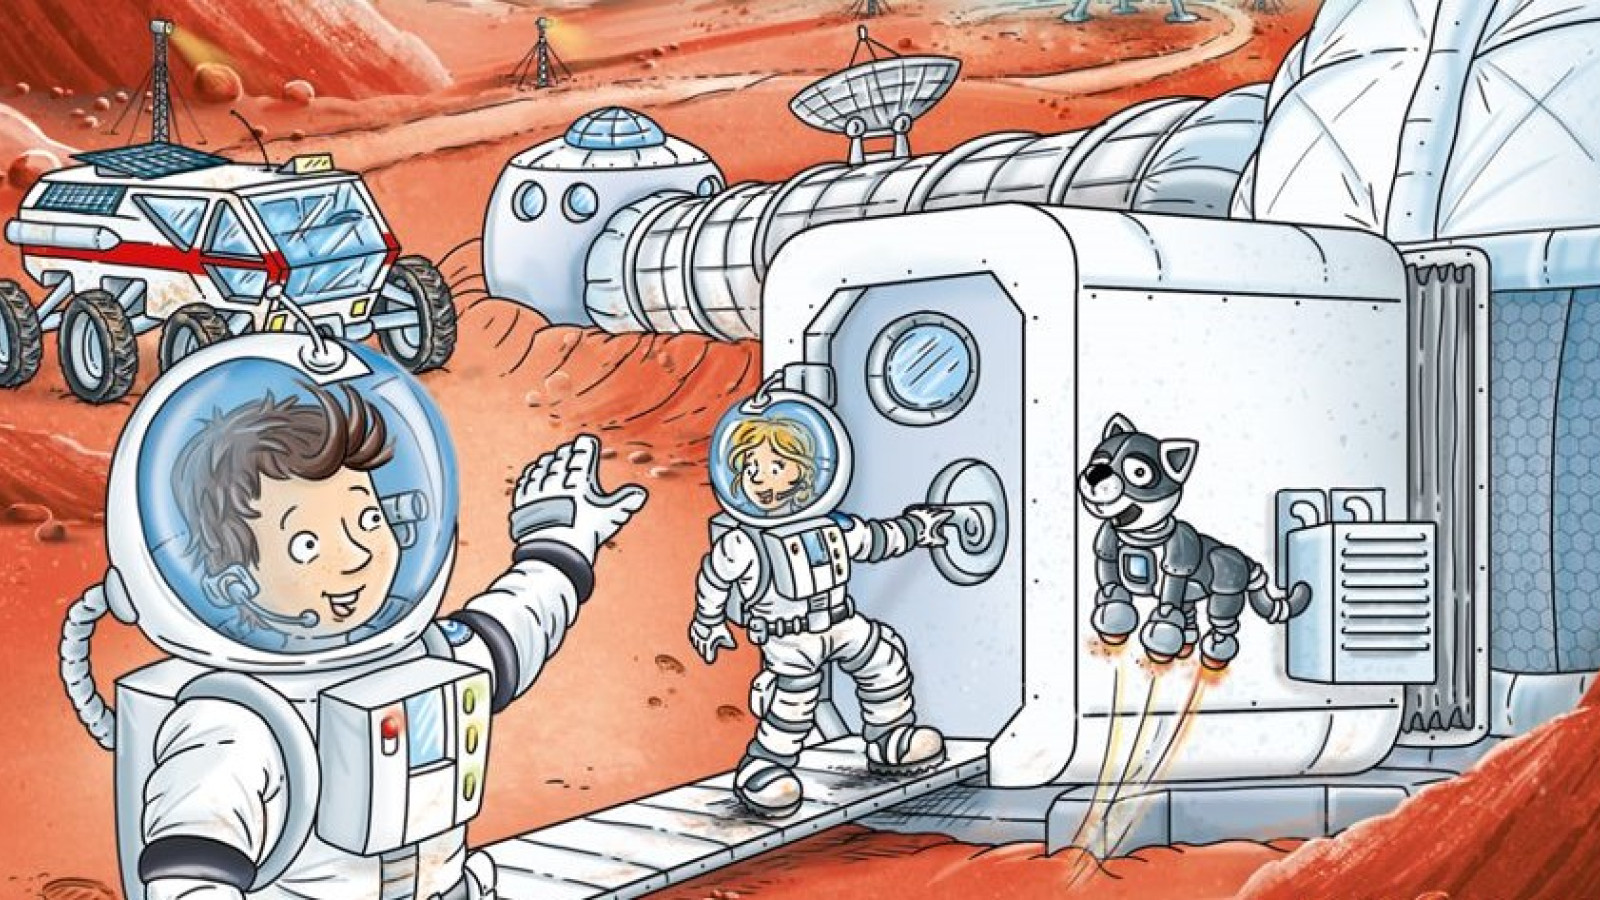 Der kleine Major Tom ist zurück mit zwei neuen Abenteuern auf dem Mars